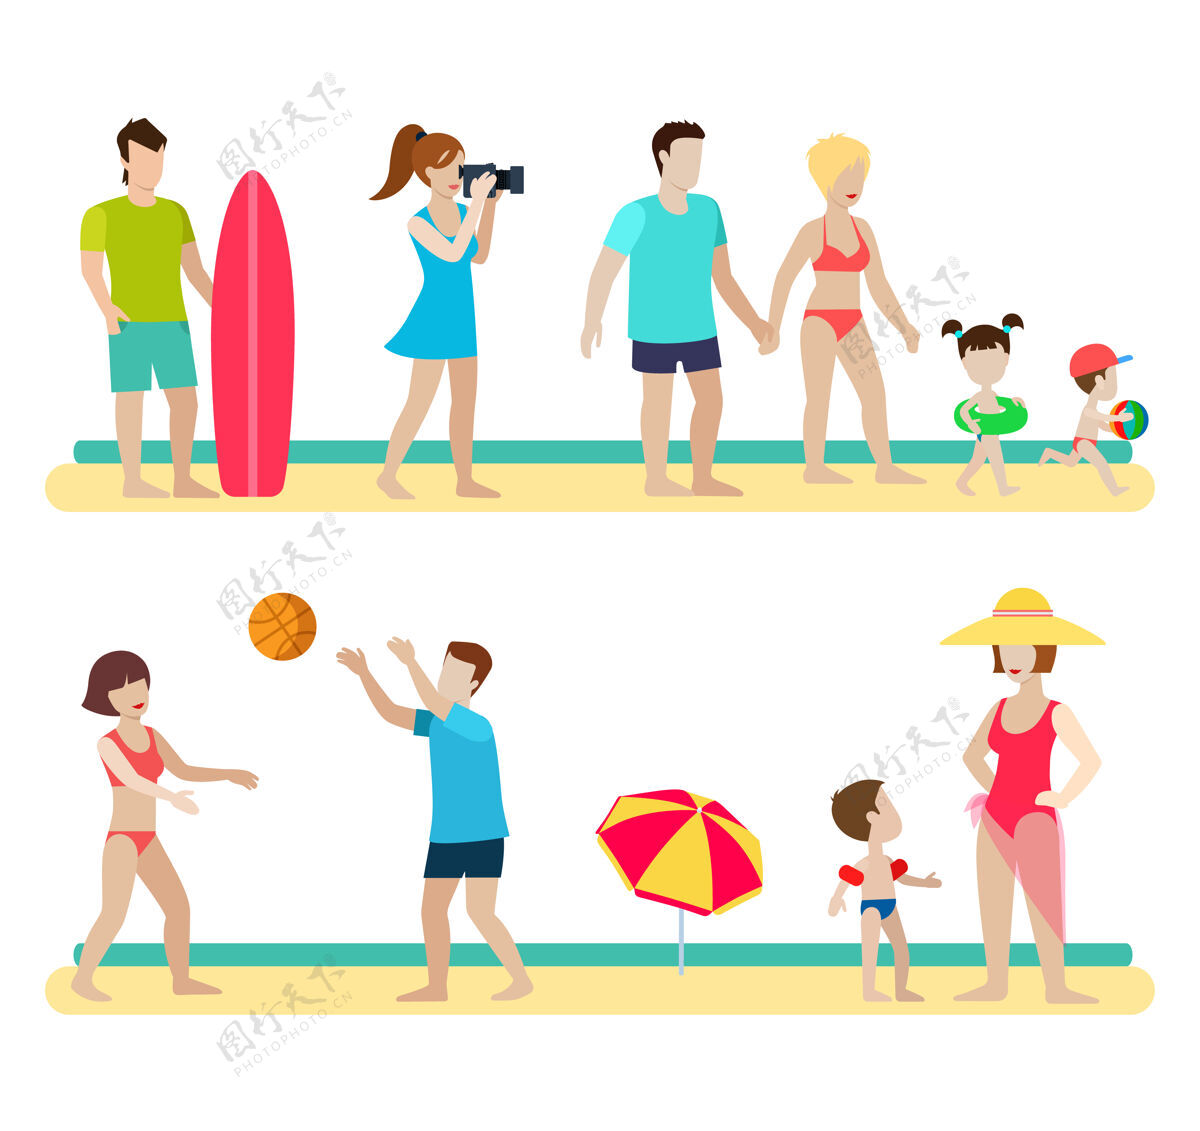 年轻平面风格现代海滩人家庭生活方式情景集摄影师冲浪夫妇子女育儿排球伞男女生活方式育儿夏天男人